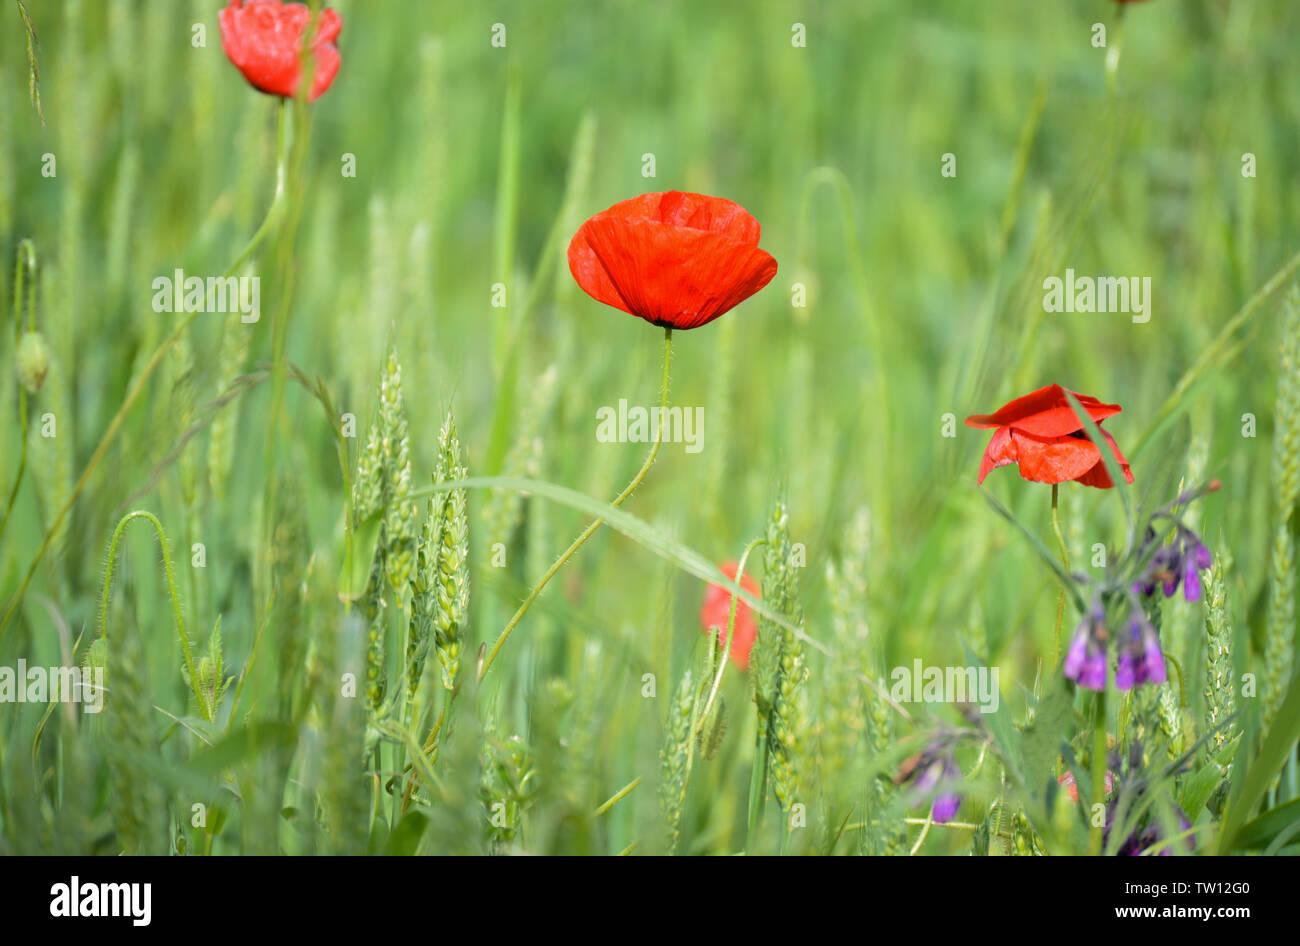 Poppy flowers in wheat field Stock Photo